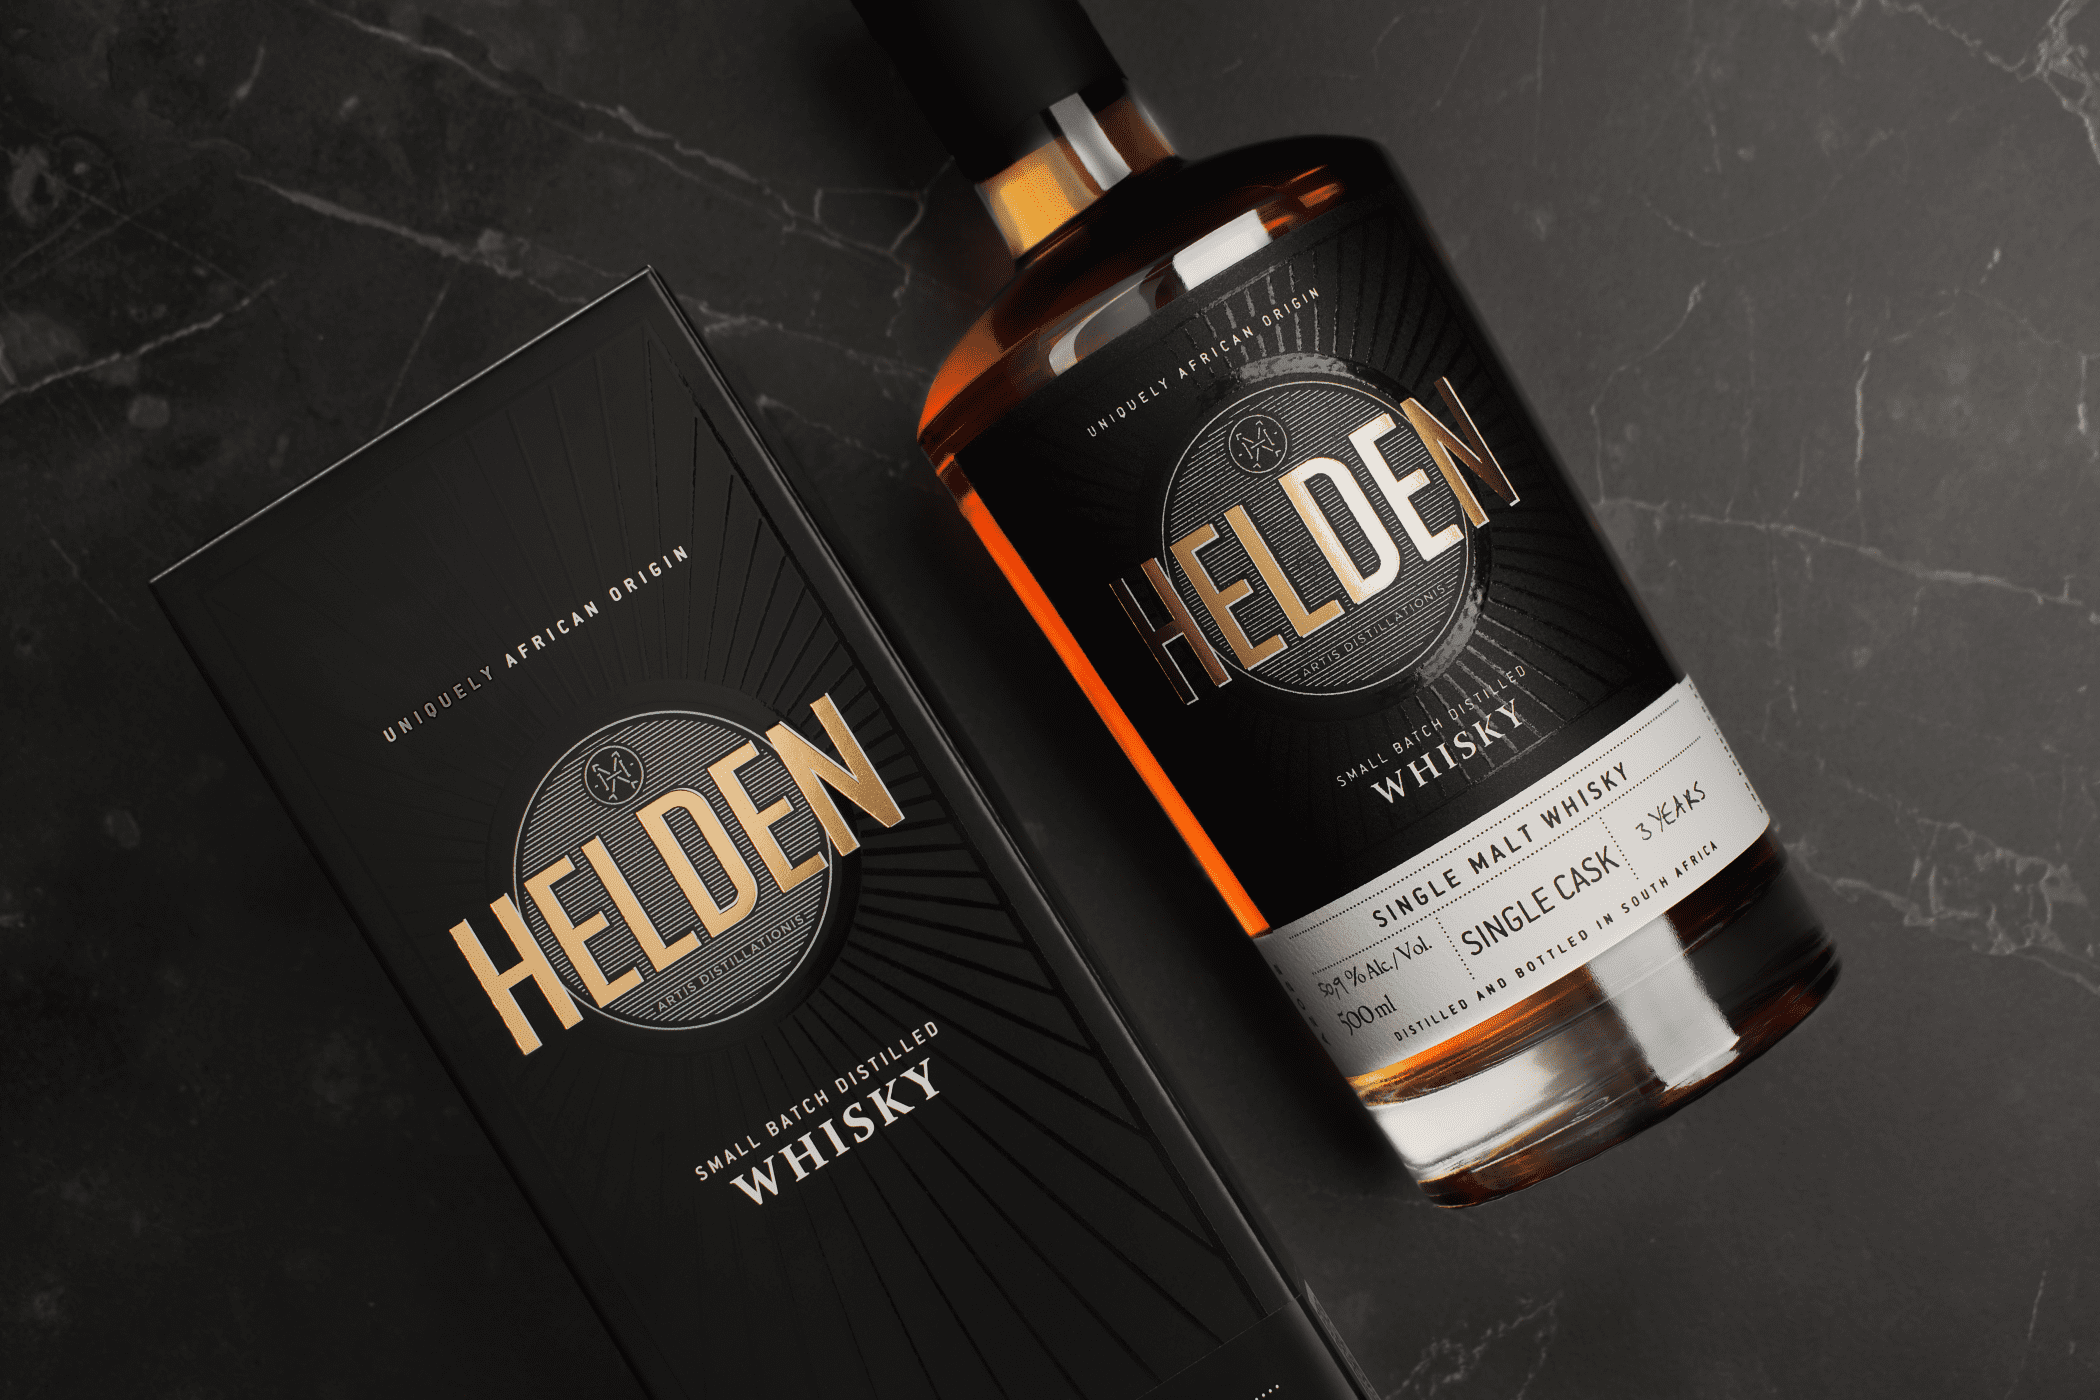 The Helden Single Malt Whisky - Helden Distillery